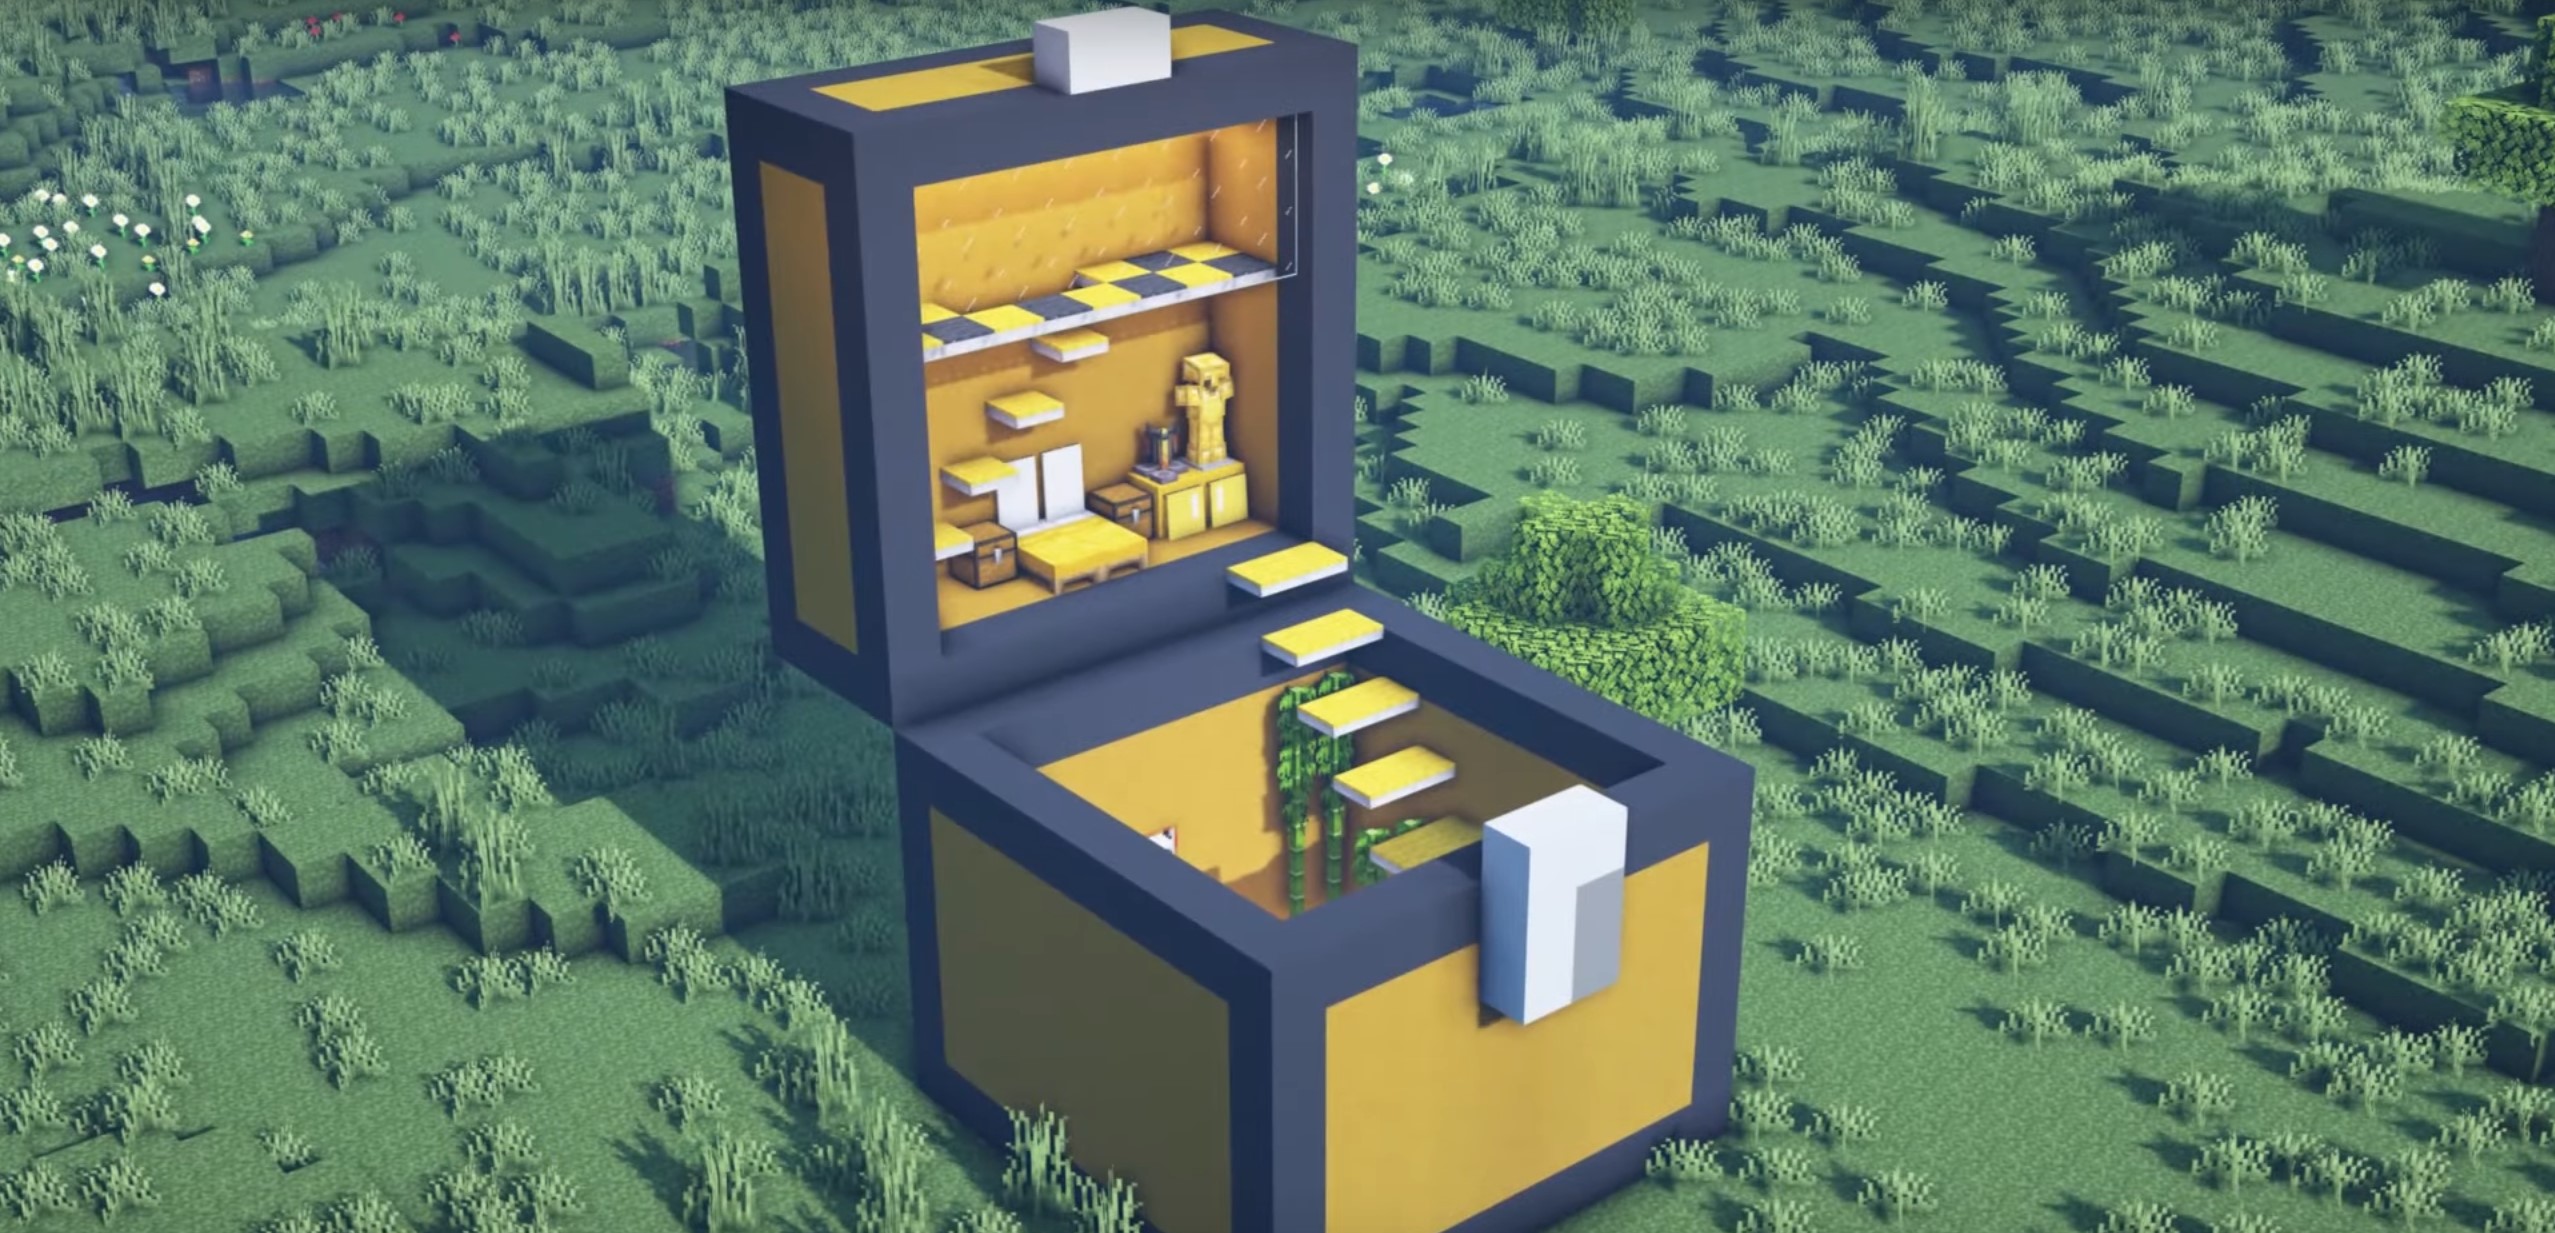 Minecraft Giant Chest House idea